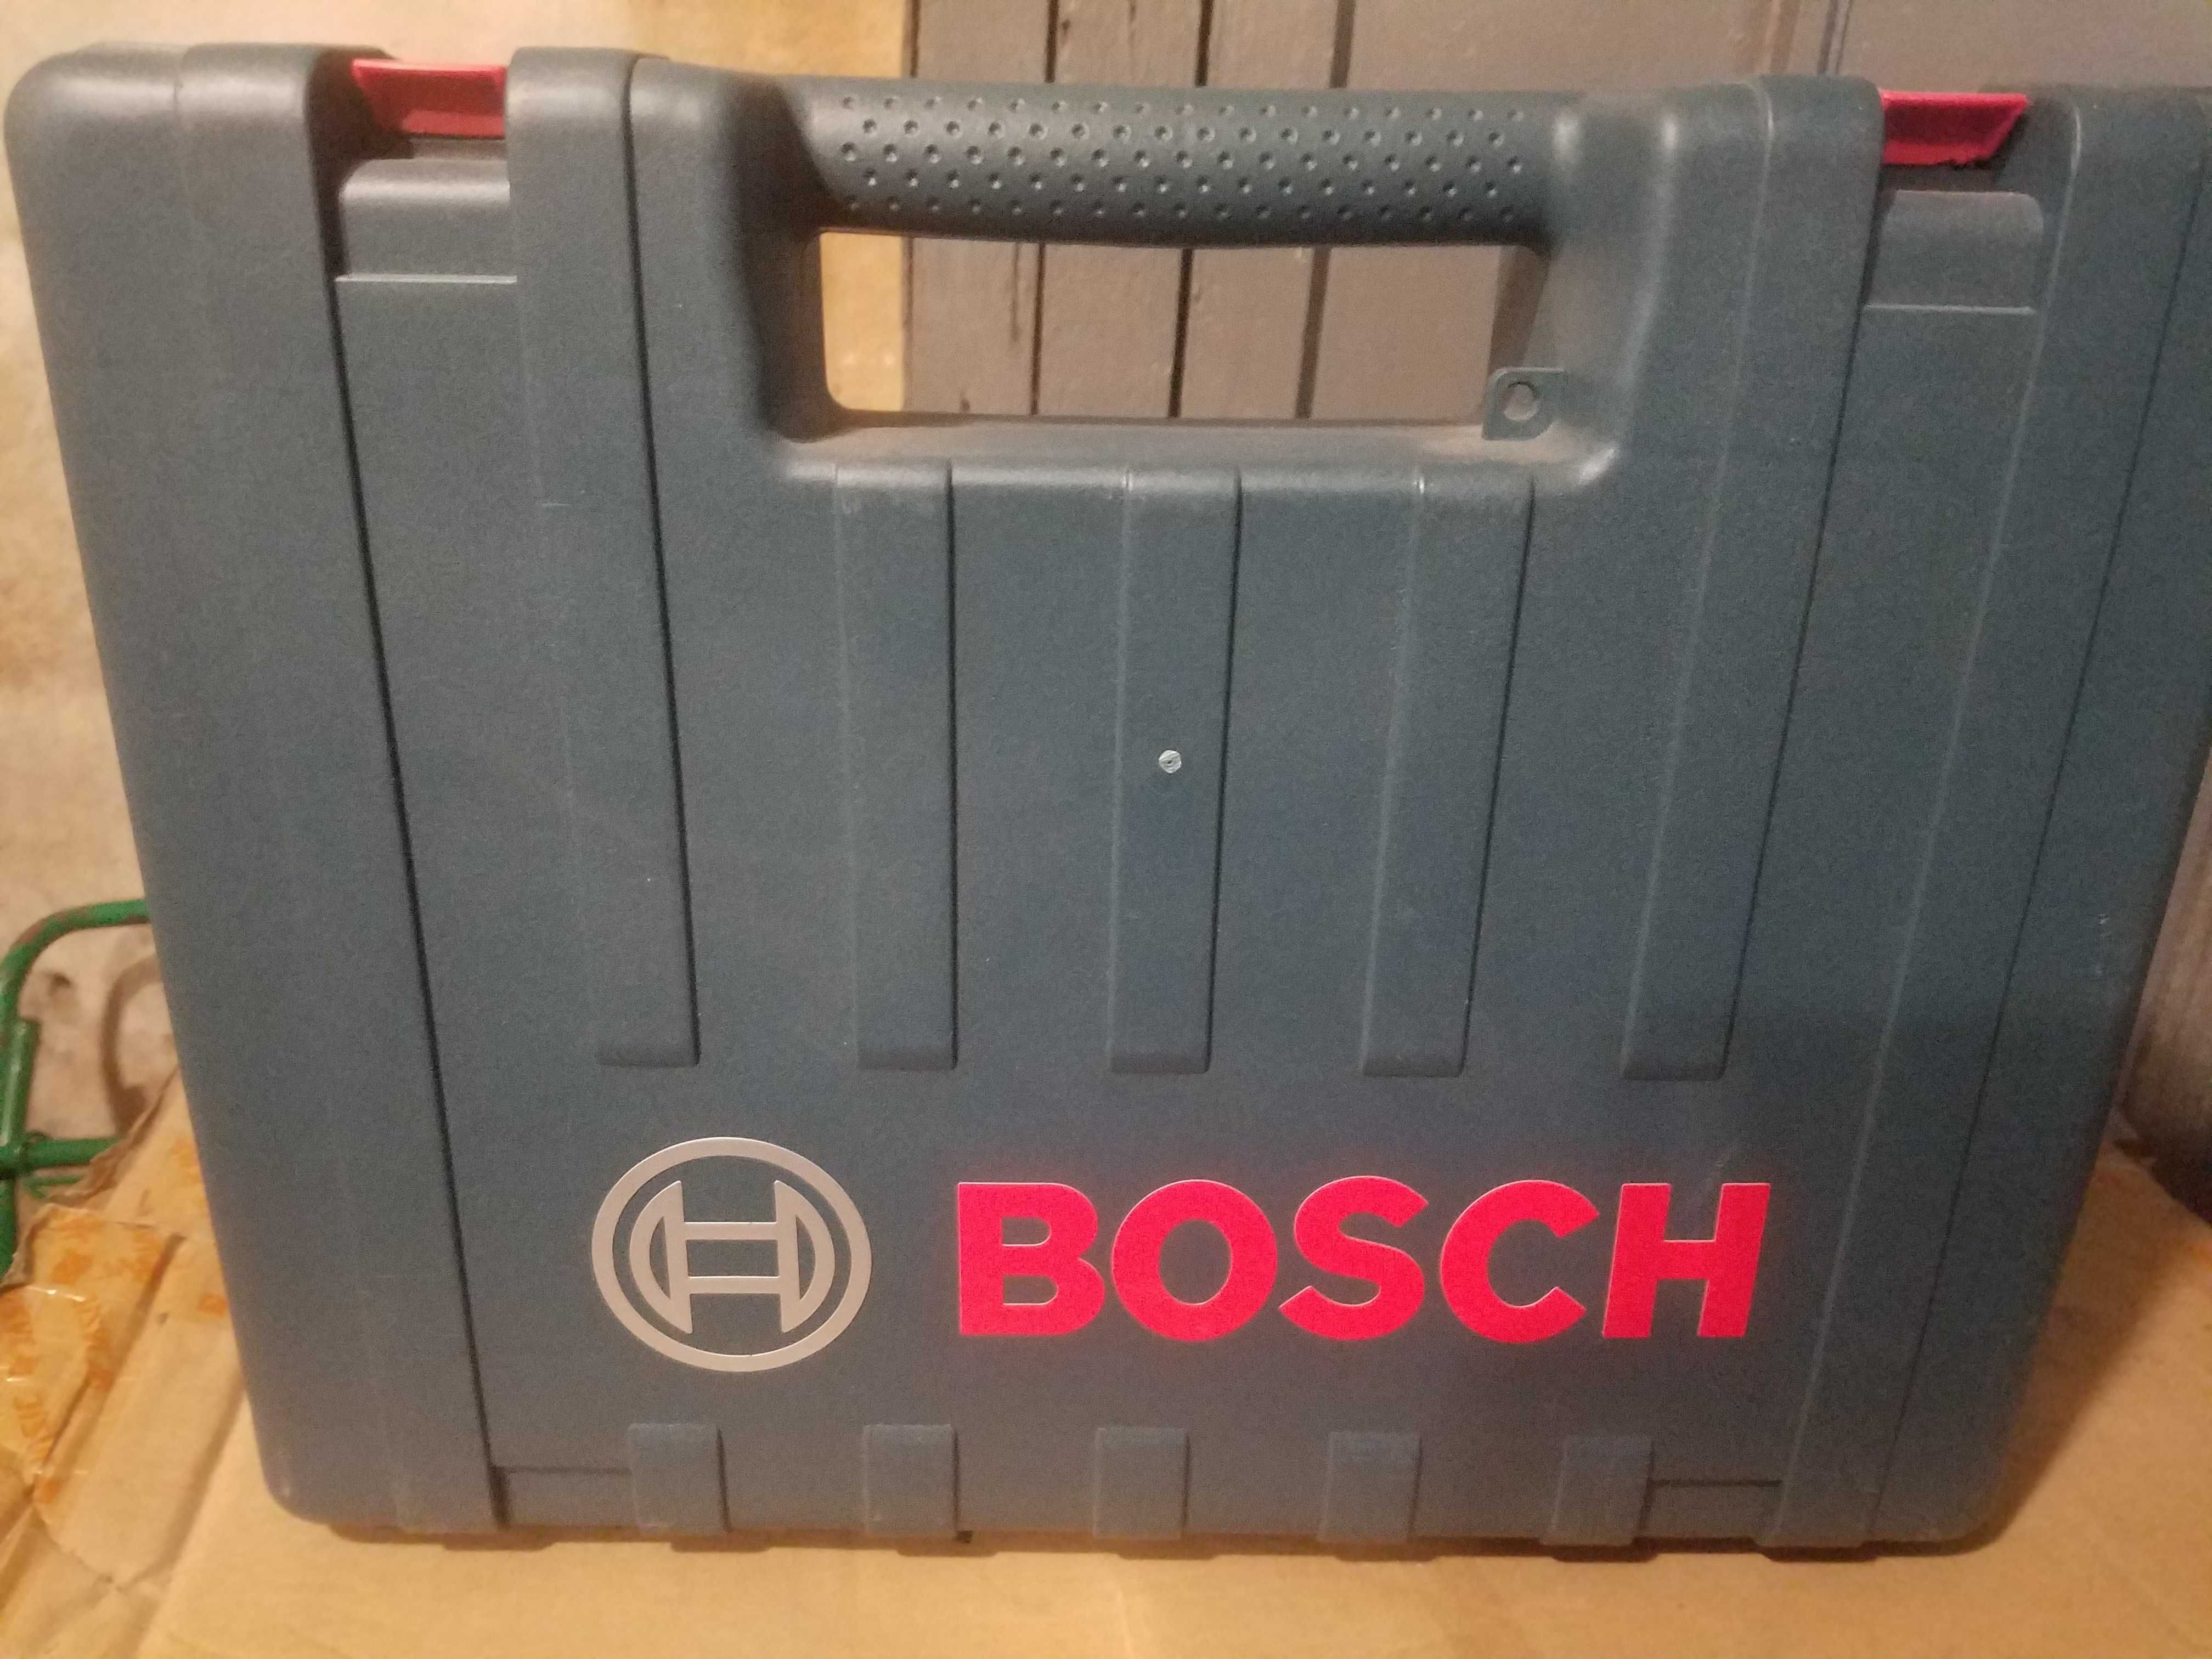 Продам Перфоратор Bosch GBH 2-26 DRE (800 ВТ), профессиональный